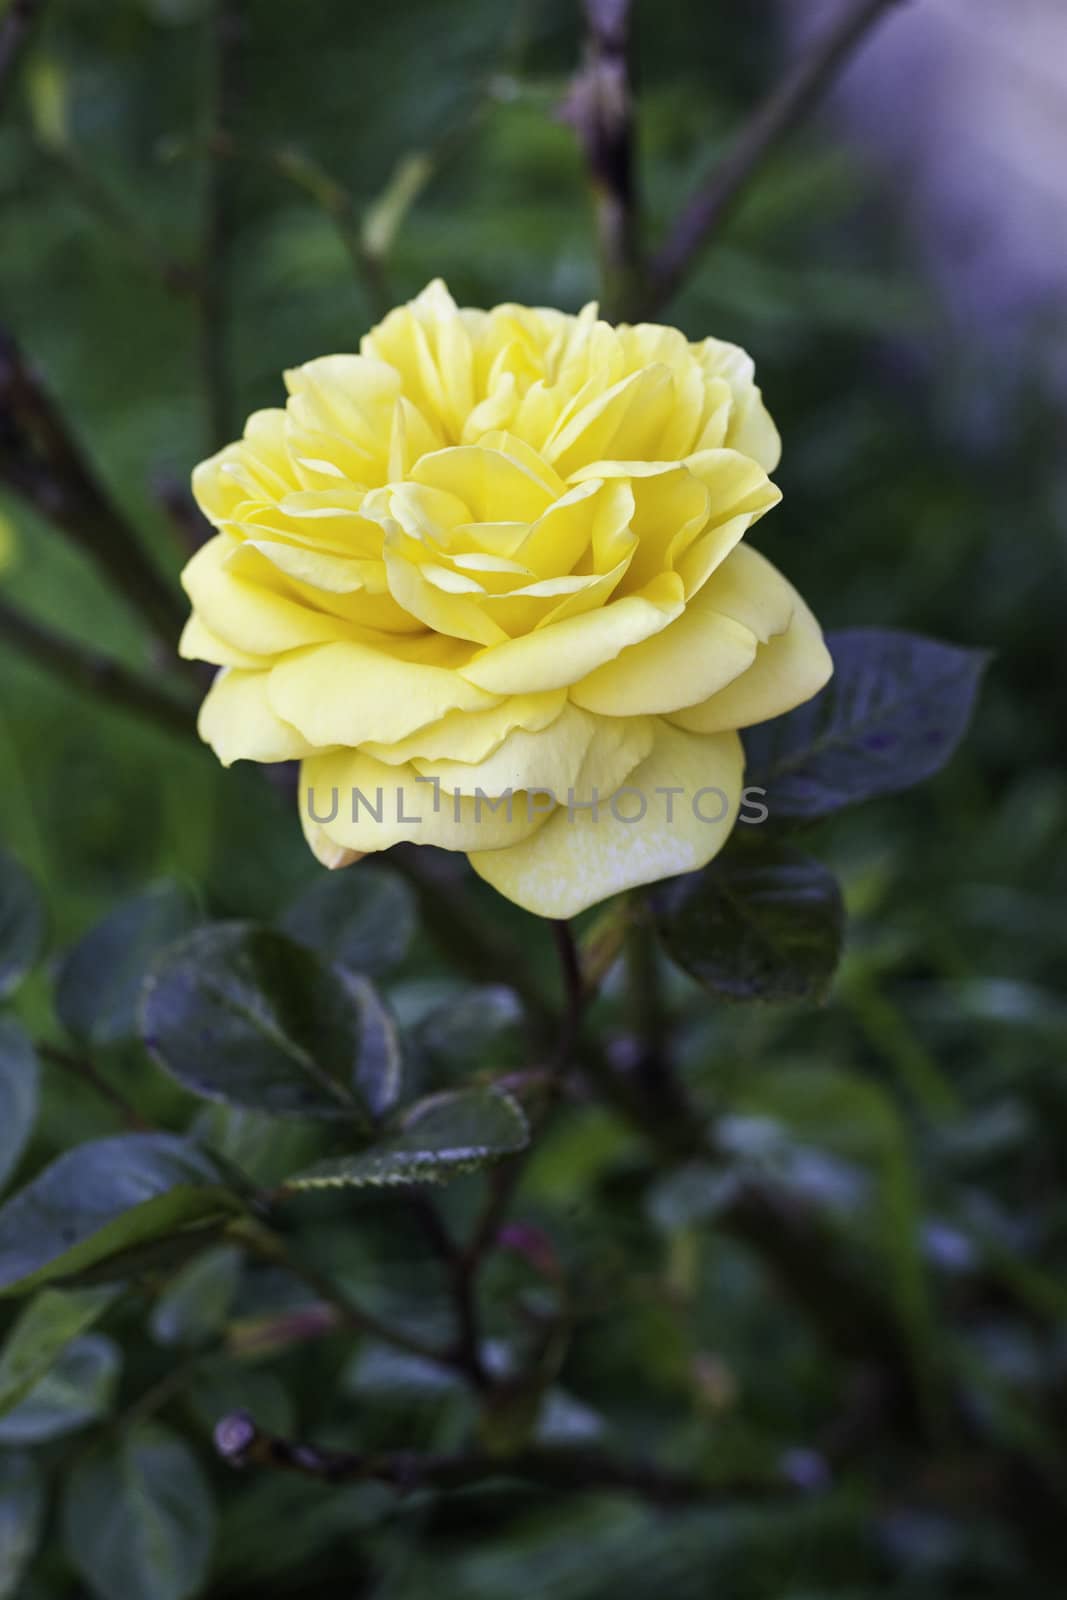 Single beautiful yellow rose by jrock635